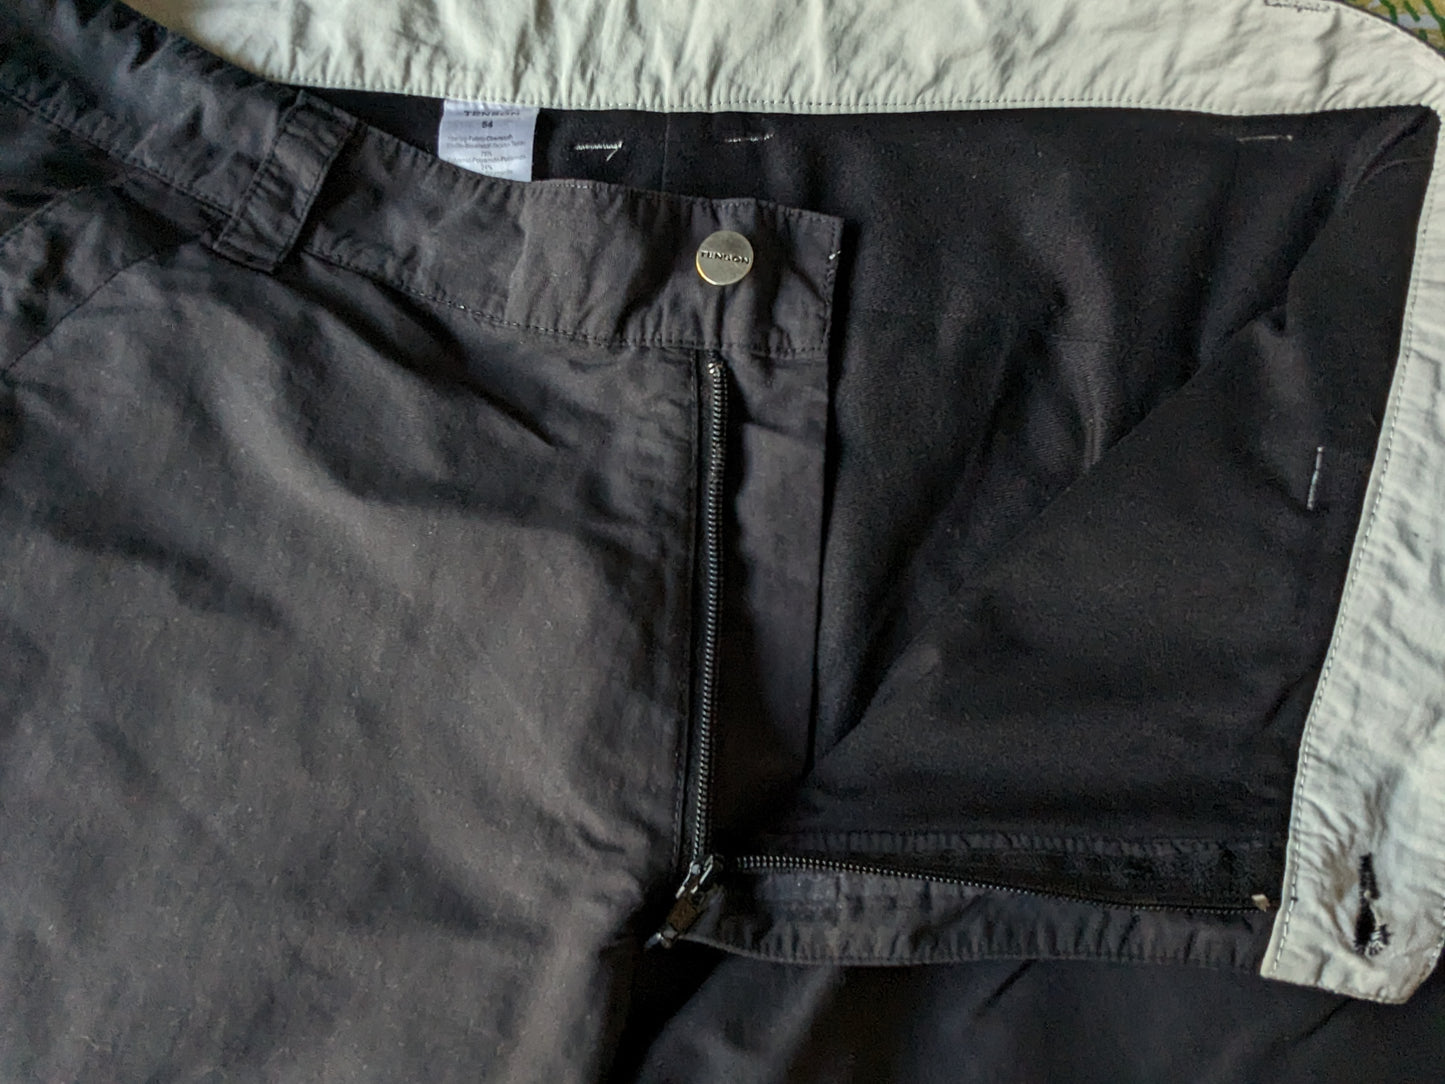 Pantaloni da esterno Tenson. Fodera morbida e calda. Di colore nero. Taglia 54/L.